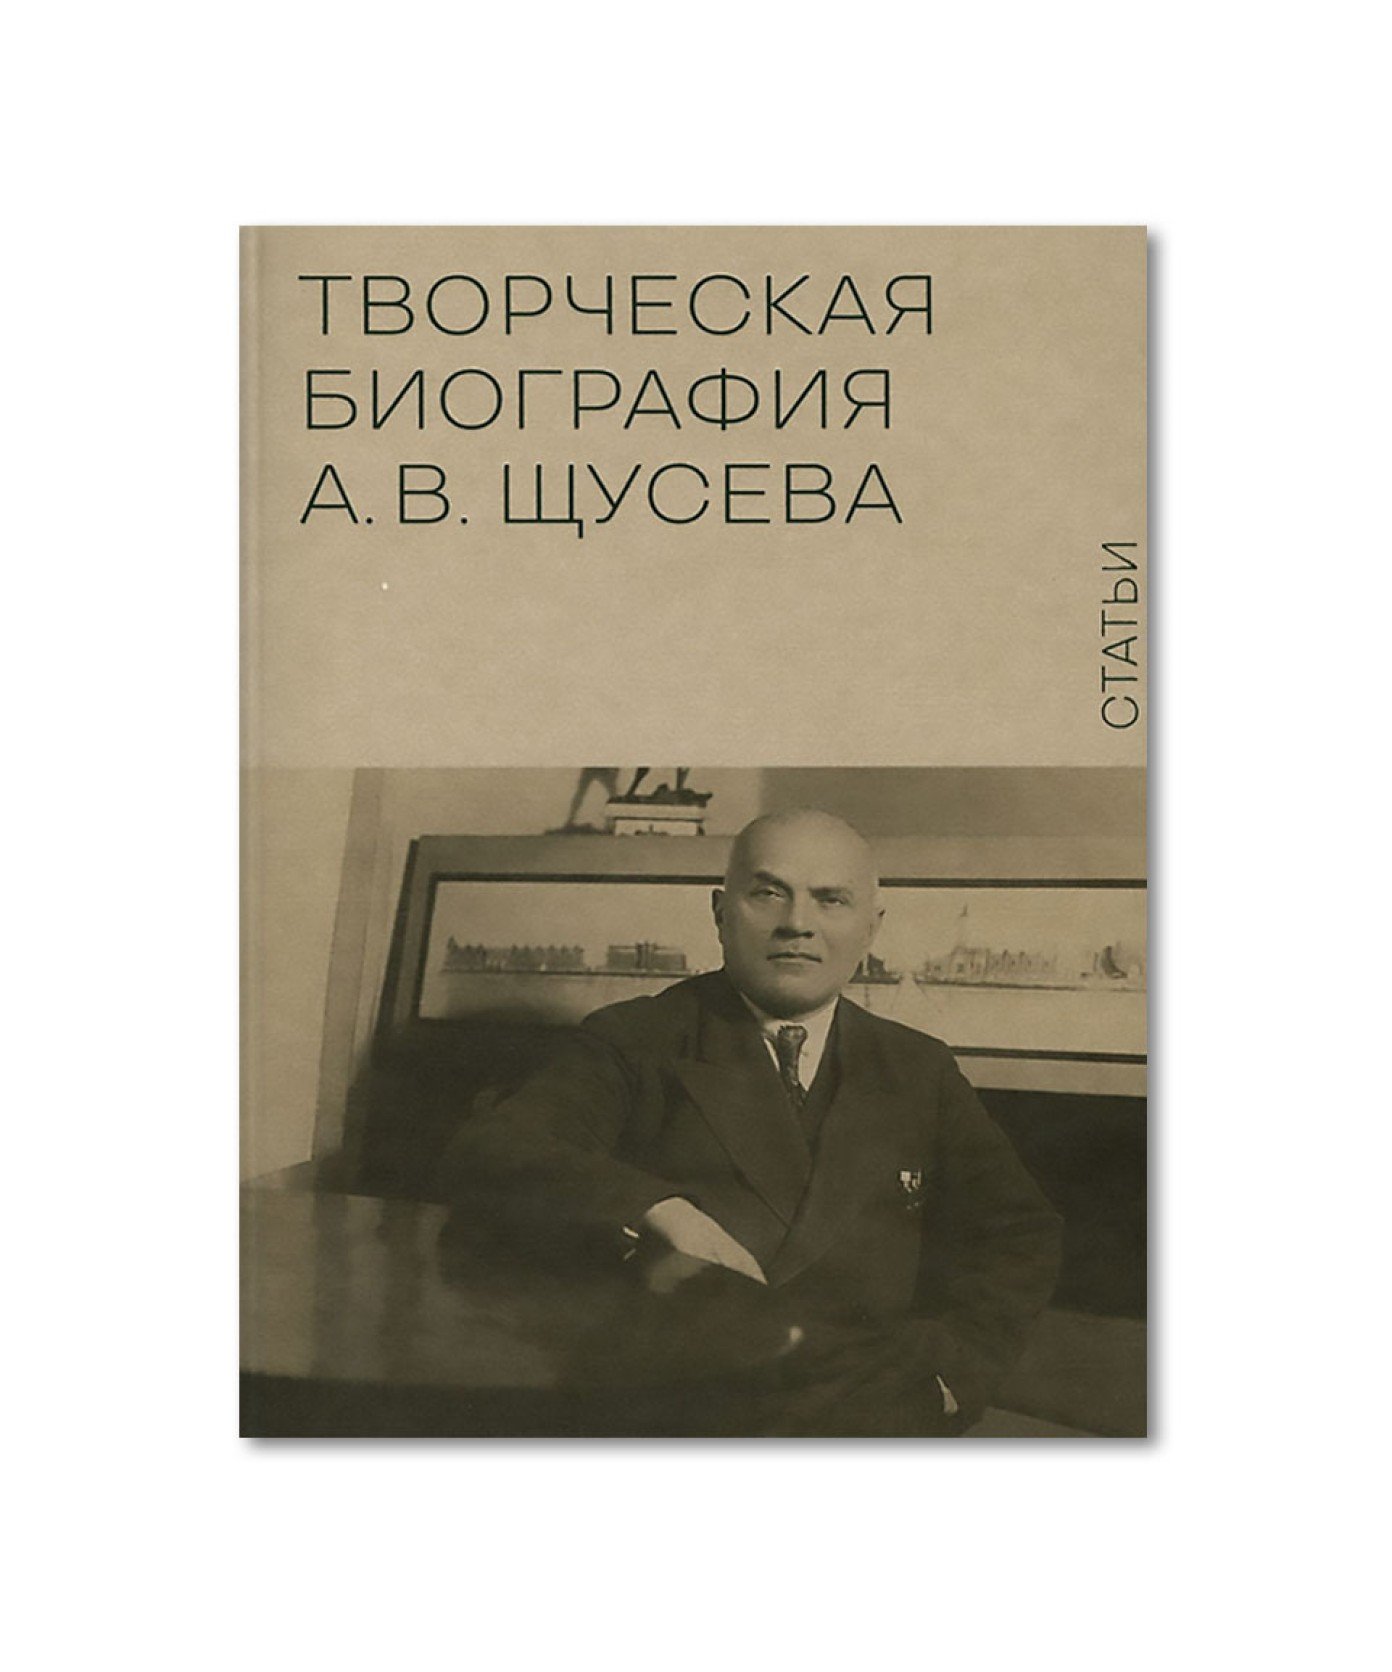 Творческая биография А.В. Щусева. Статьи